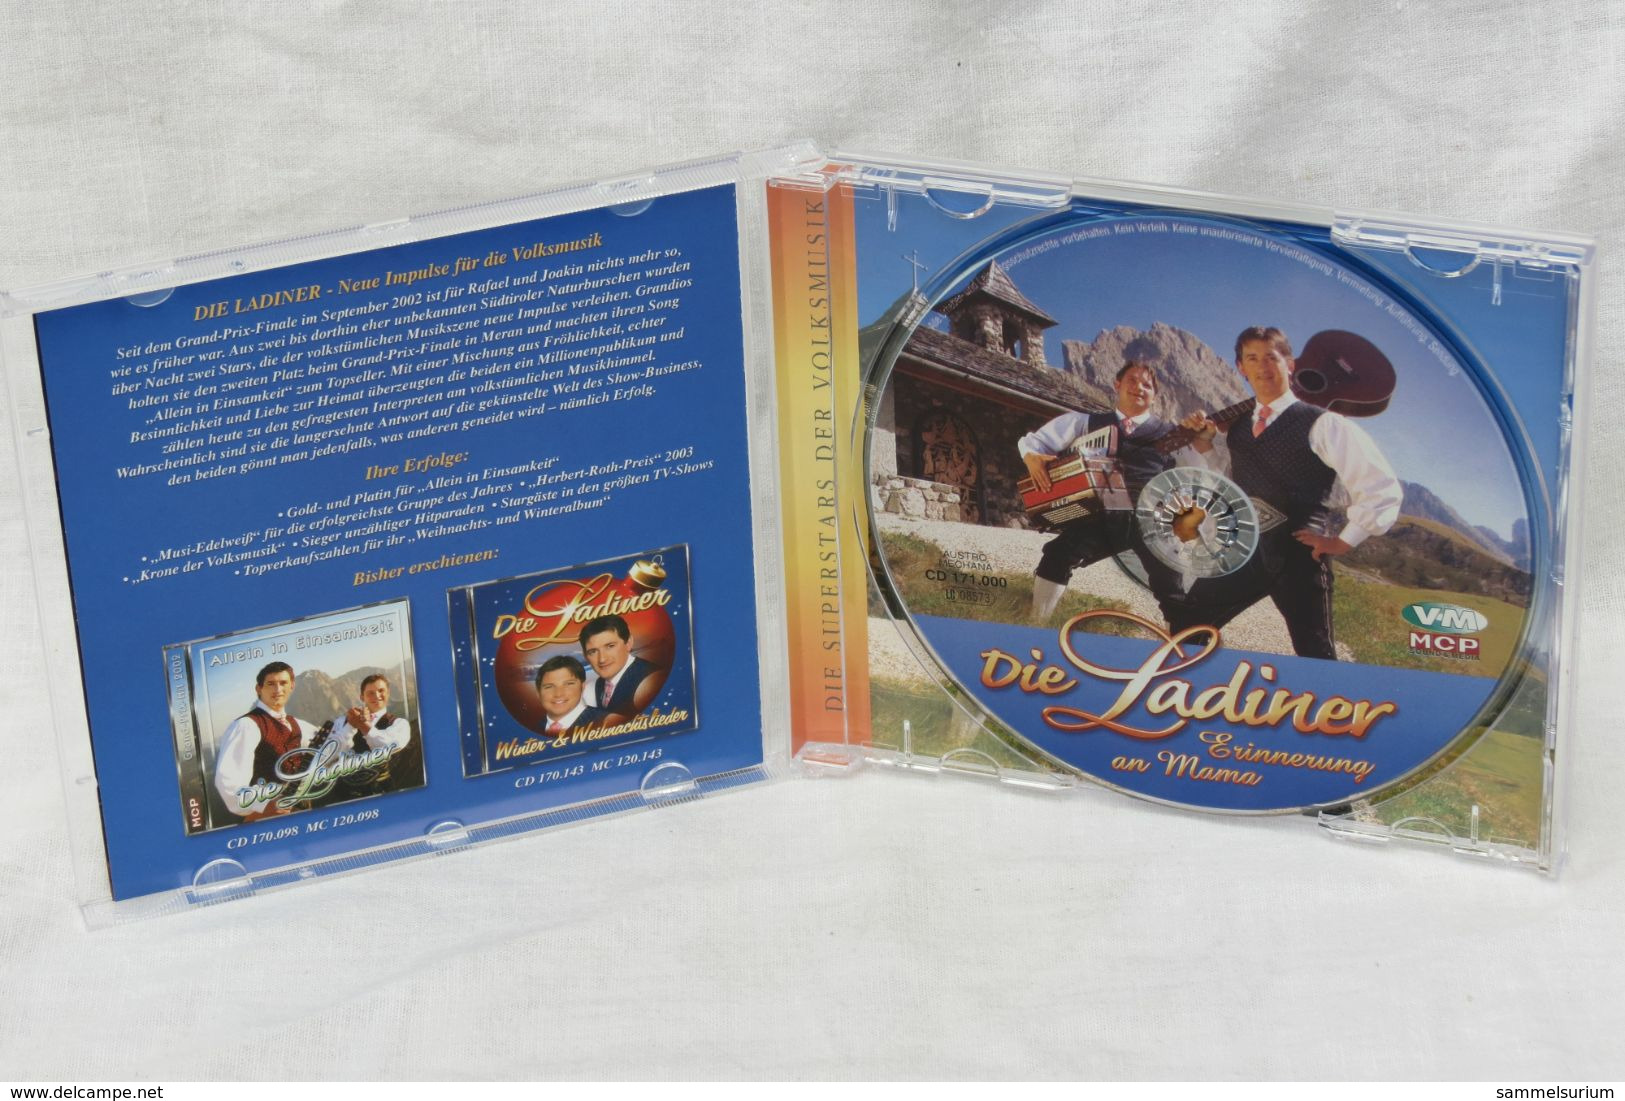 CD "Die Ladiner" Erinnerung An Mama - Autres - Musique Allemande